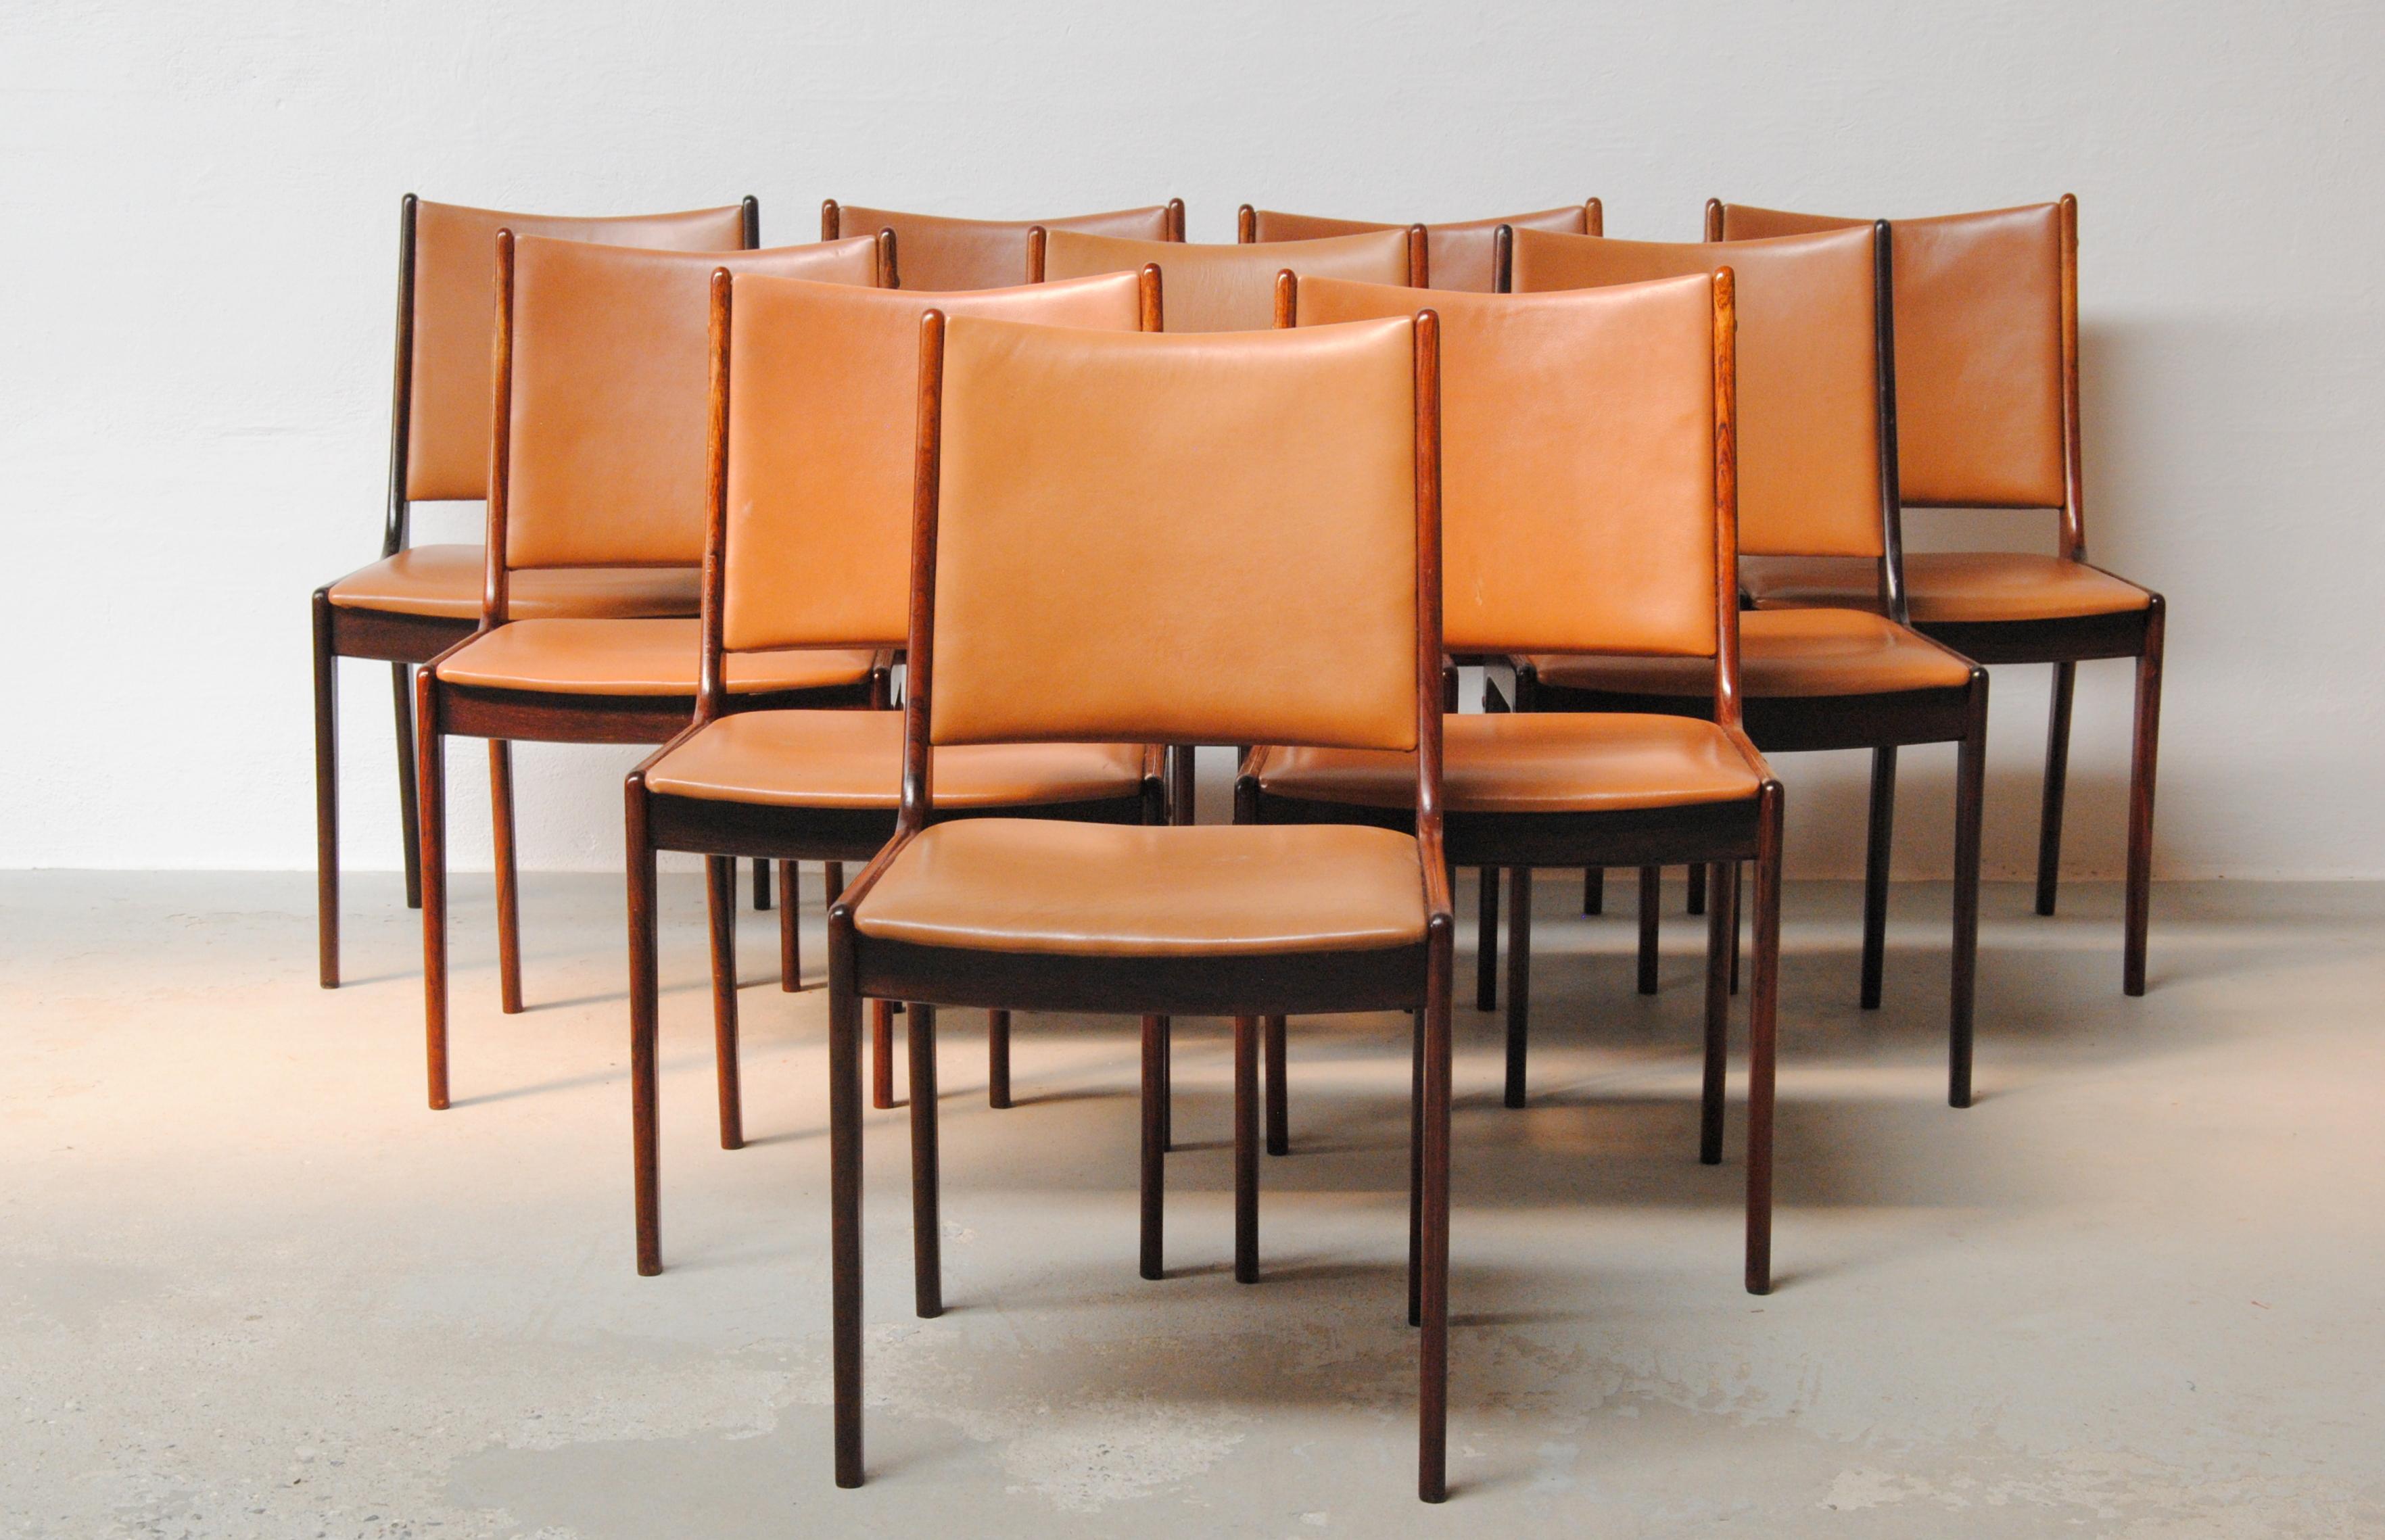 Ensemble de dix chaises de salle à manger Johannes Andersen des années 1960 en bois de rose, entièrement restaurées, fabriquées par Uldum Møbler, Danemark.

L'ensemble de chaises de salle à manger présente un design simple et élégant qui s'intégrera